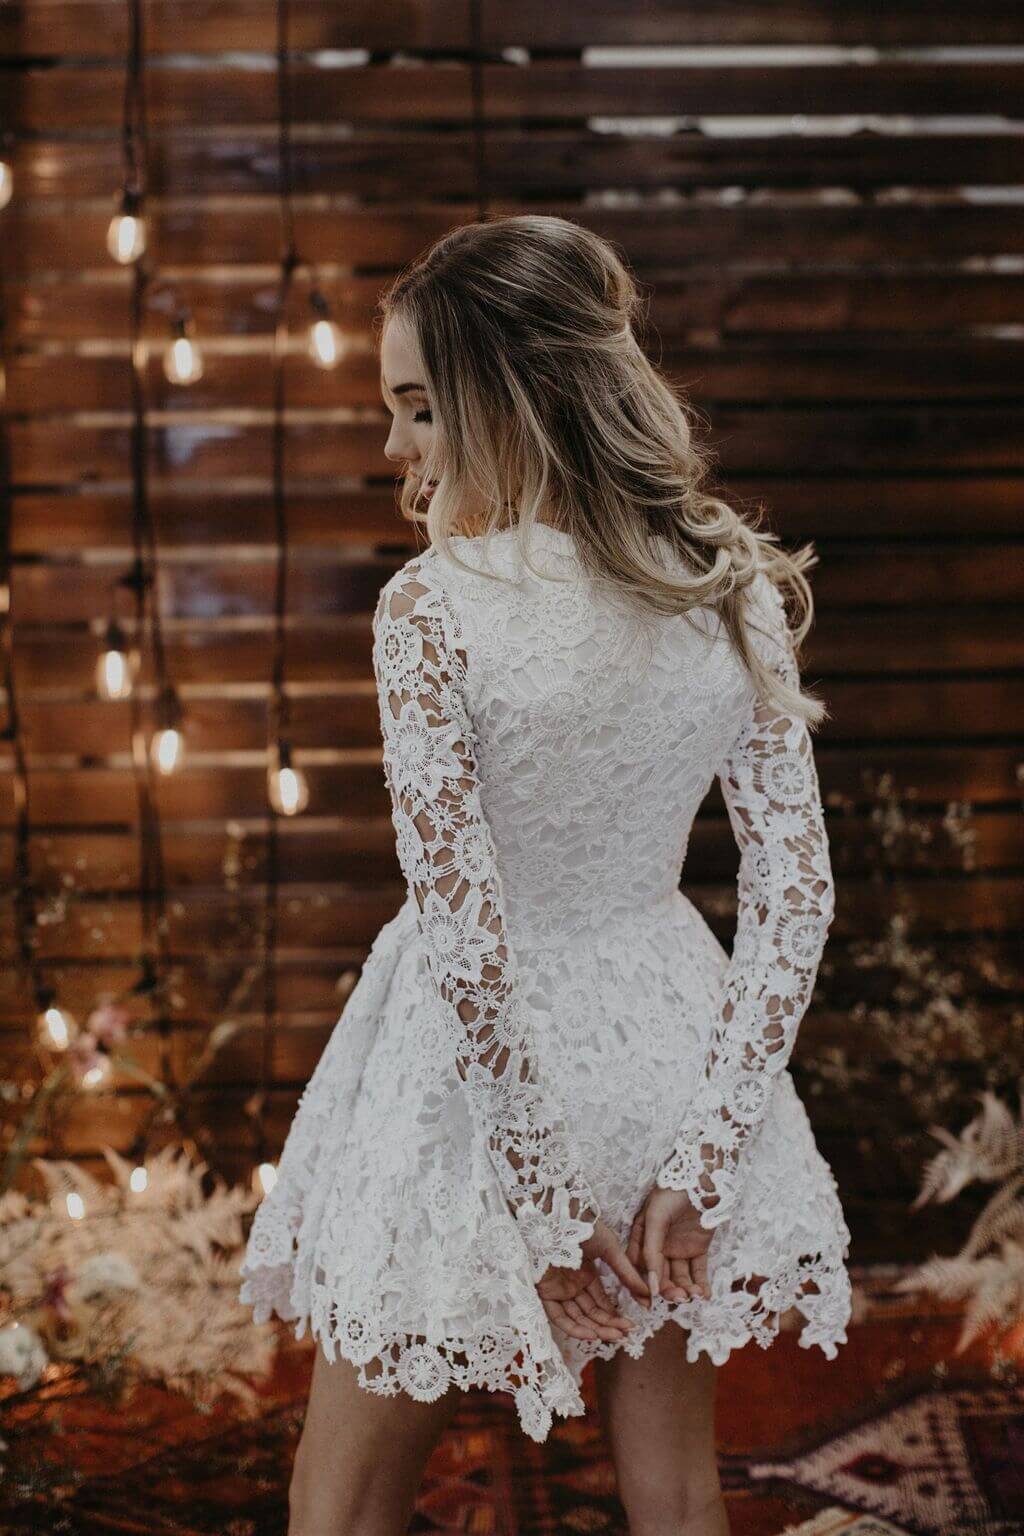 J Andreatta Fiore Mini Wedding Dress - Browns Bride